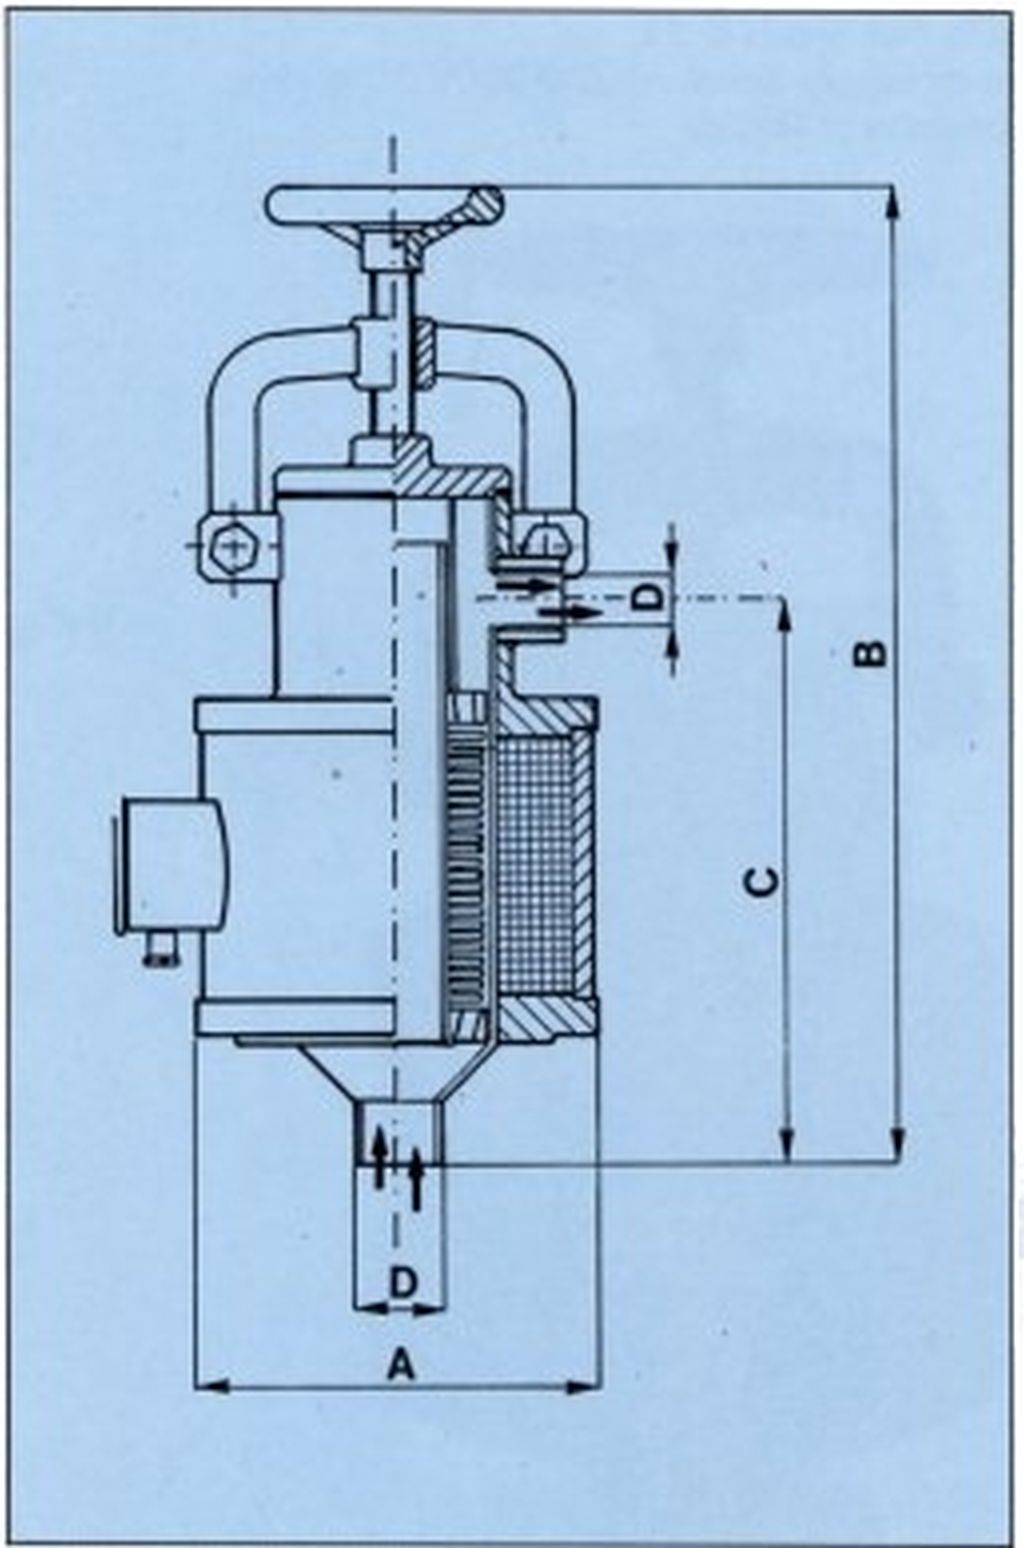 FPL Elektro magnetischer Druckfilter Schnitt Zeichnung